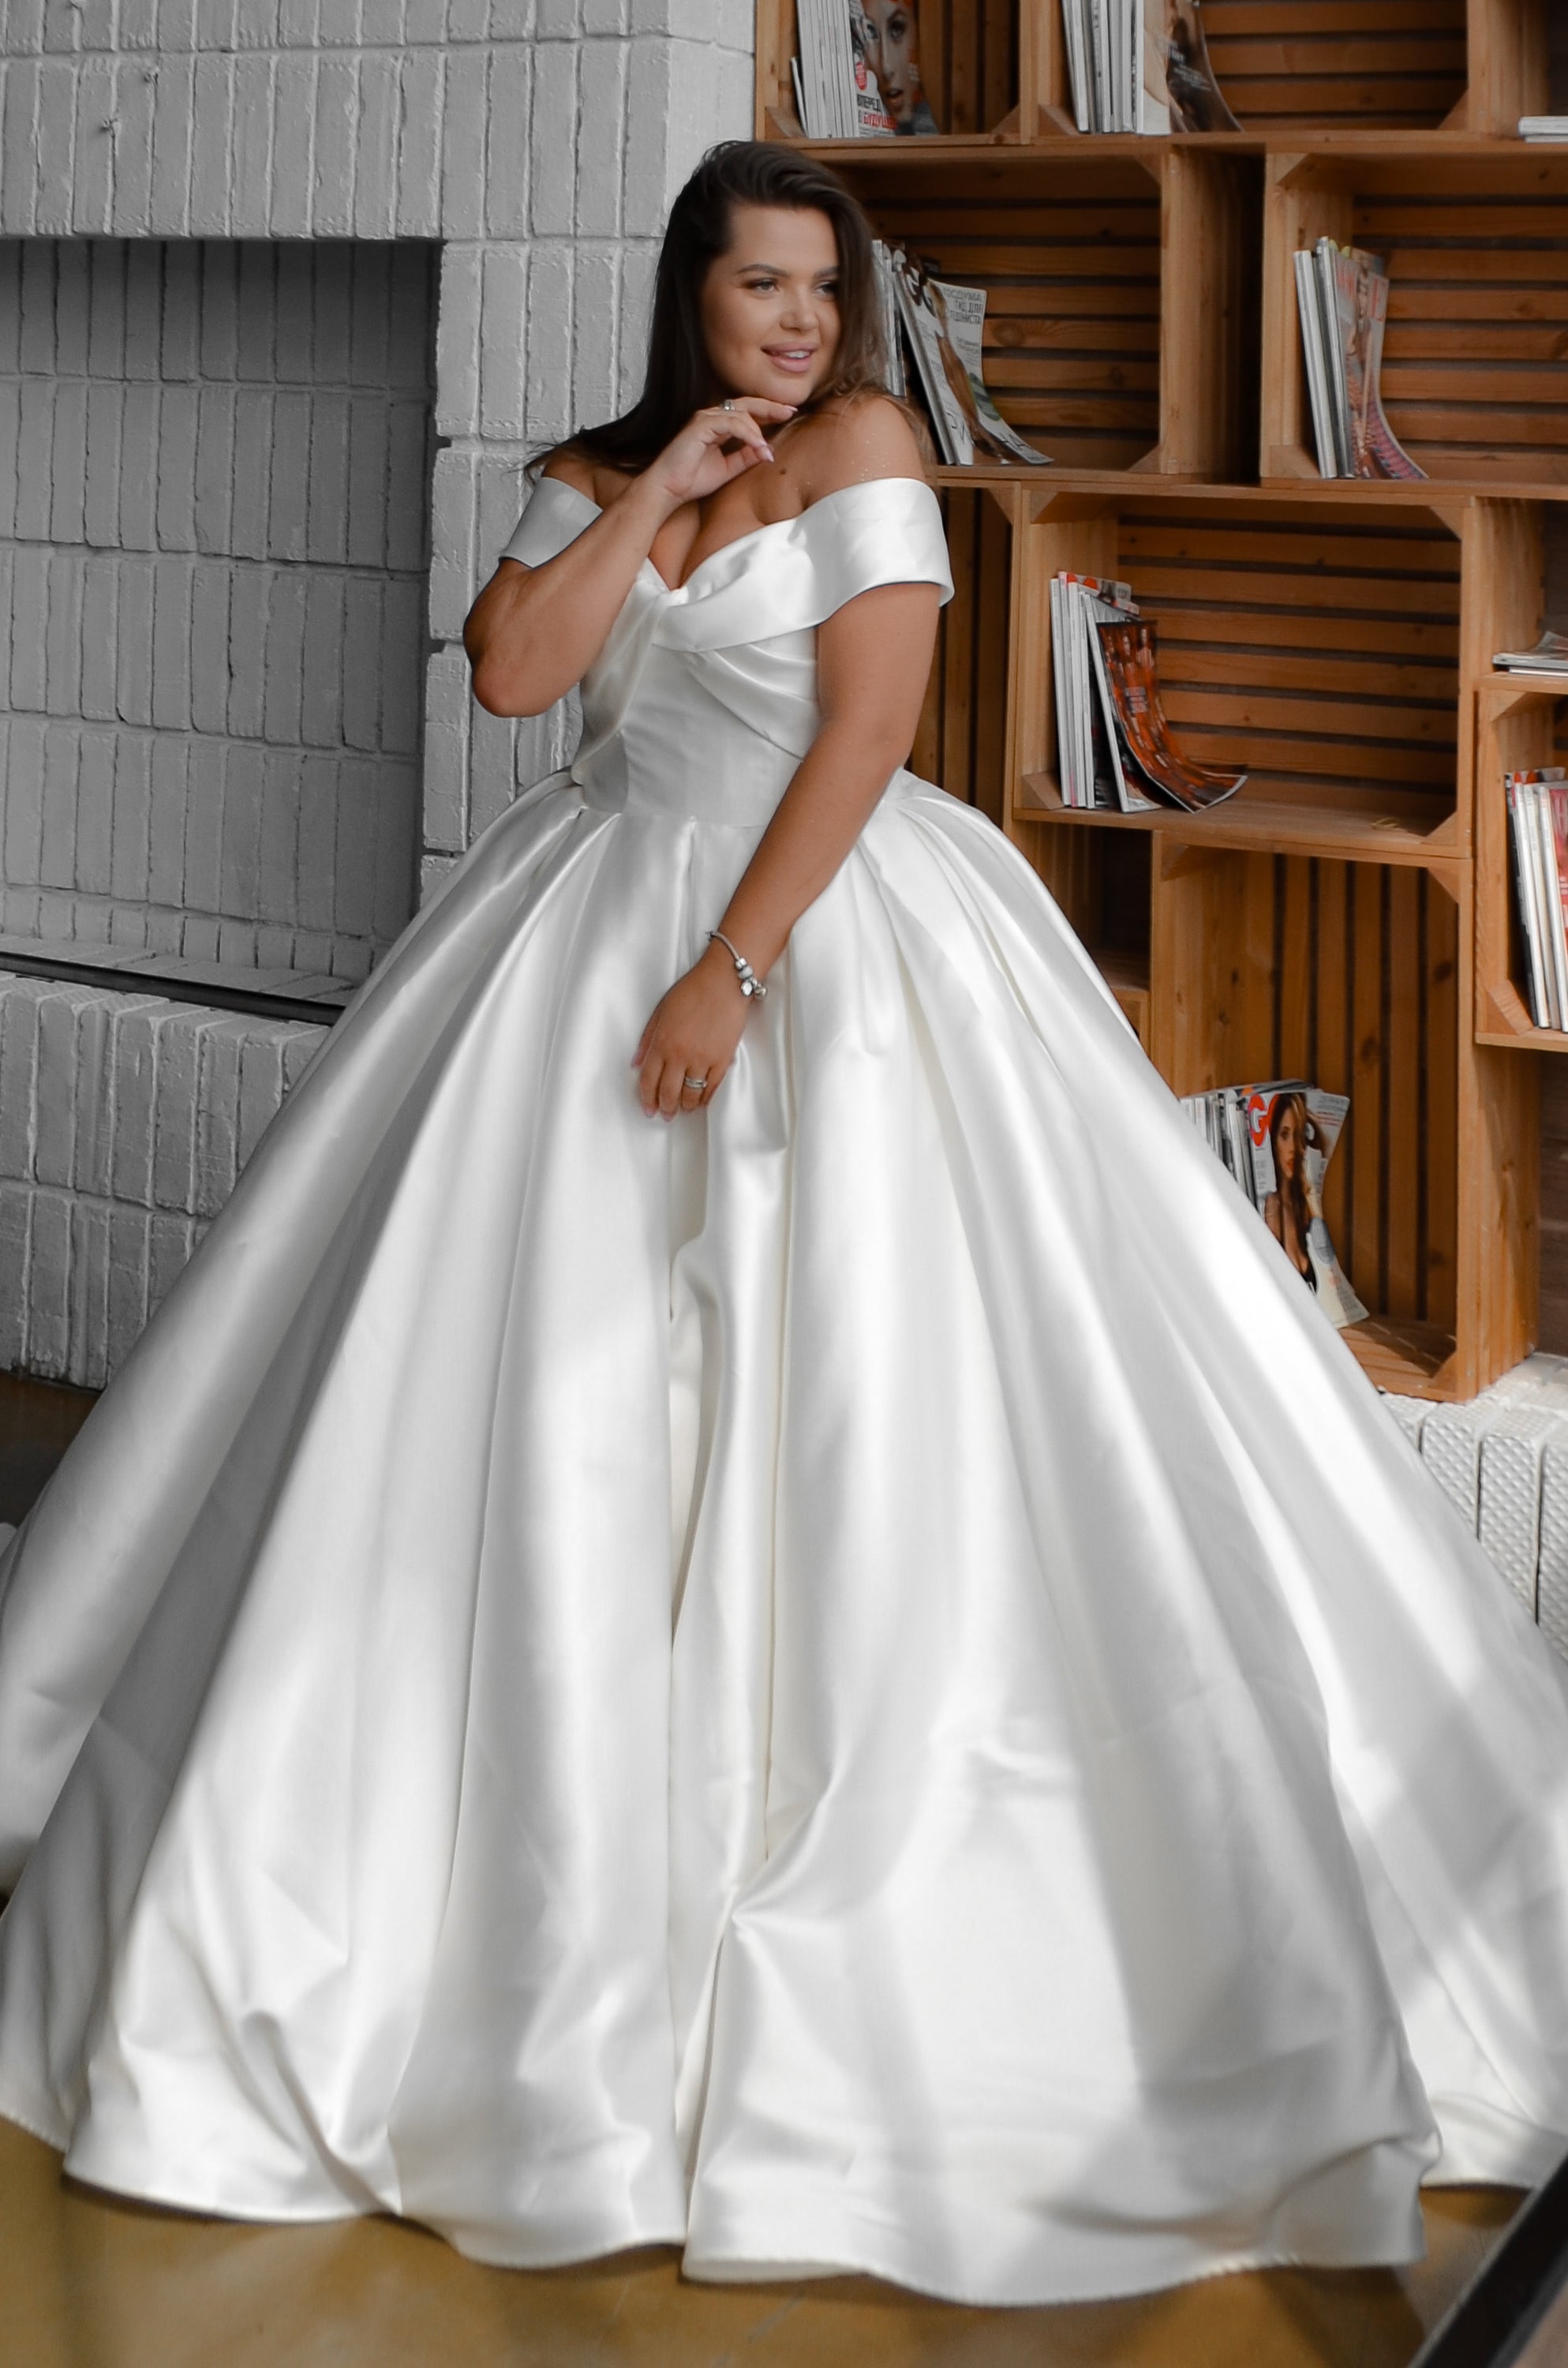 Wedding Dresses Under $5000  Online Bridal Shop – Olivia Bottega